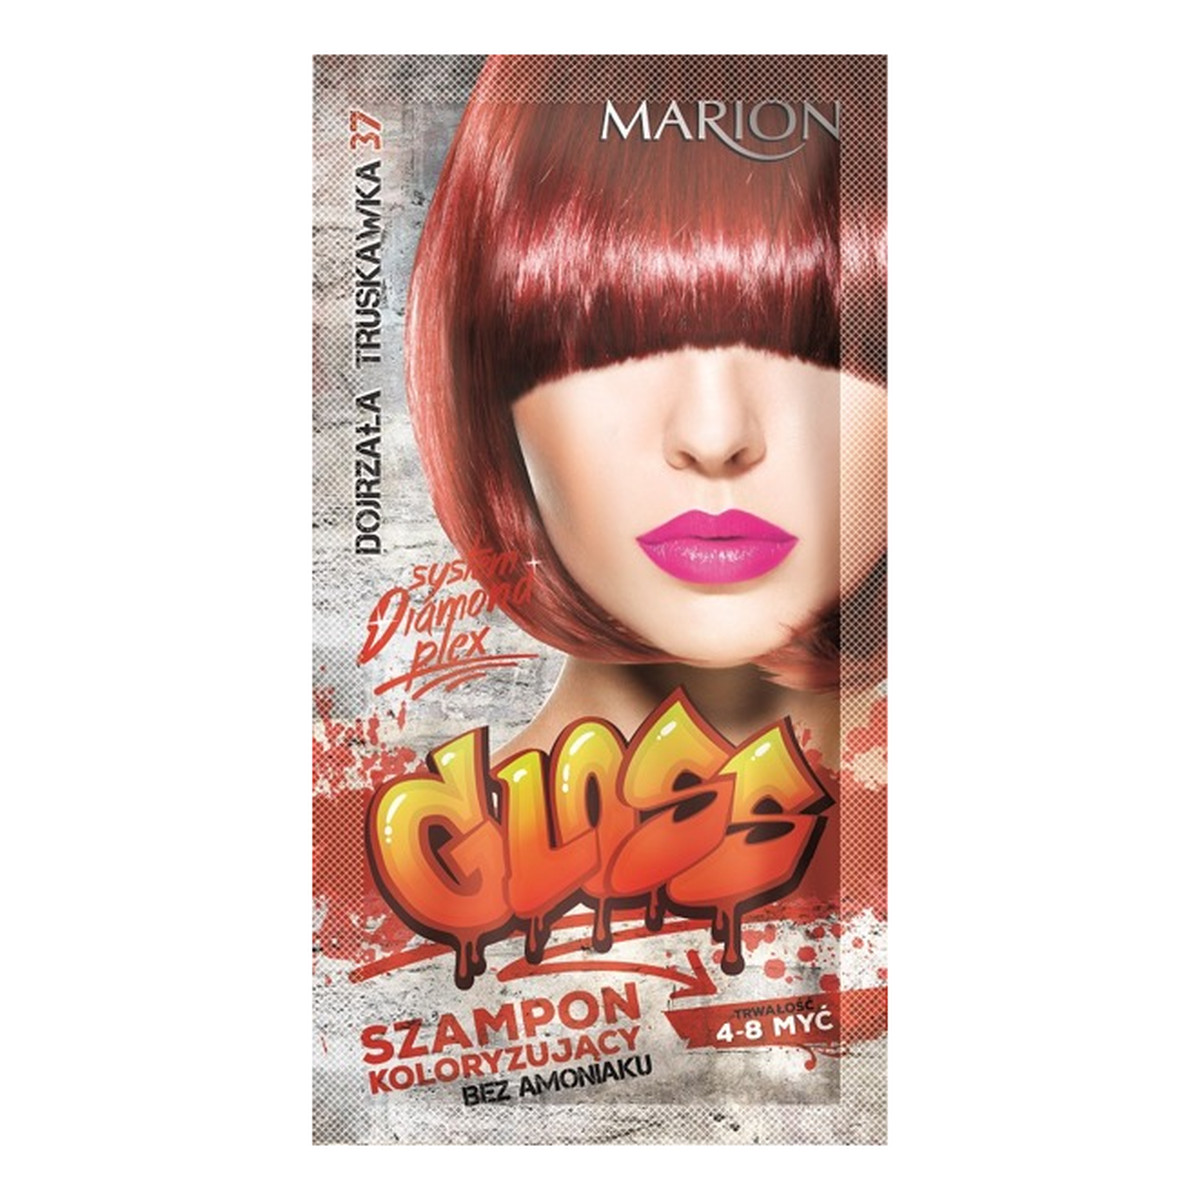 Marion Gloss szampon koloryzujący bez amoniaku 40ml